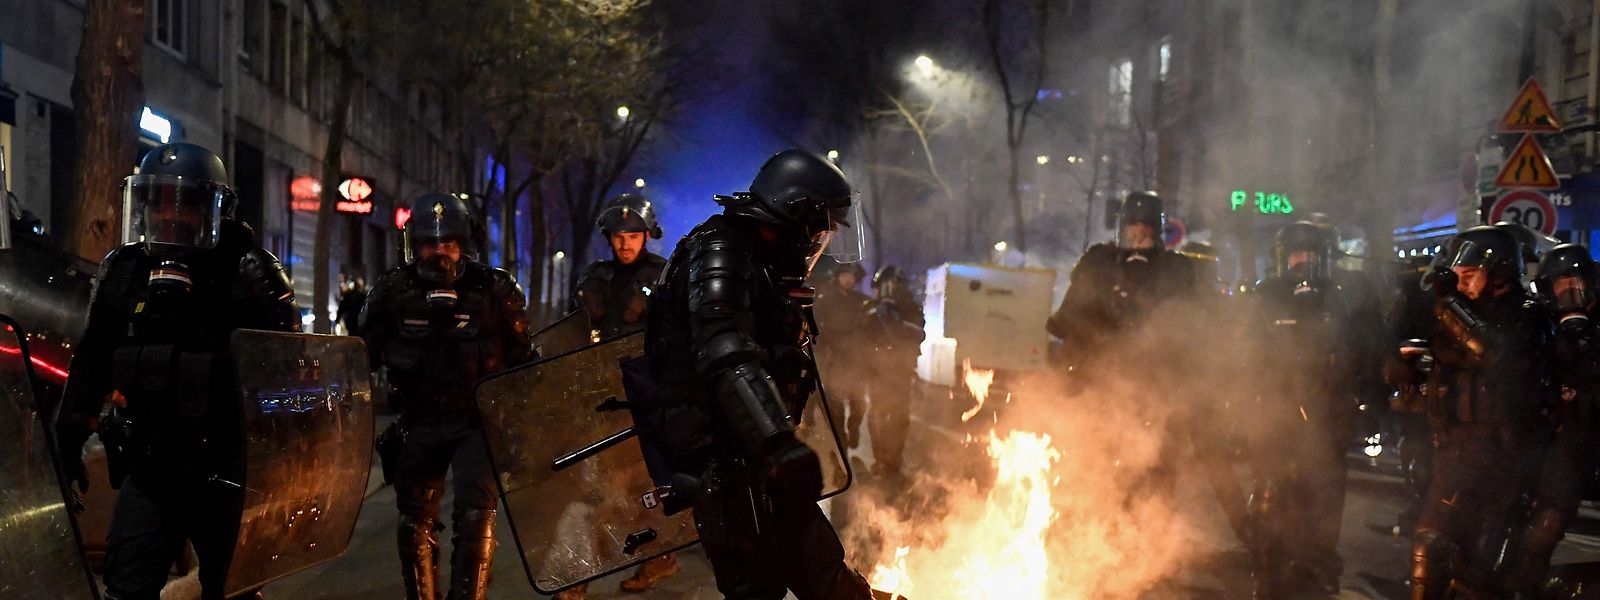 Bei Protesten gegen das Vorgehen der französischen Regierung bei der Rentenreform wurden landesweit in der Nacht zum Samstag zahlreiche Menschen festgenommen. 